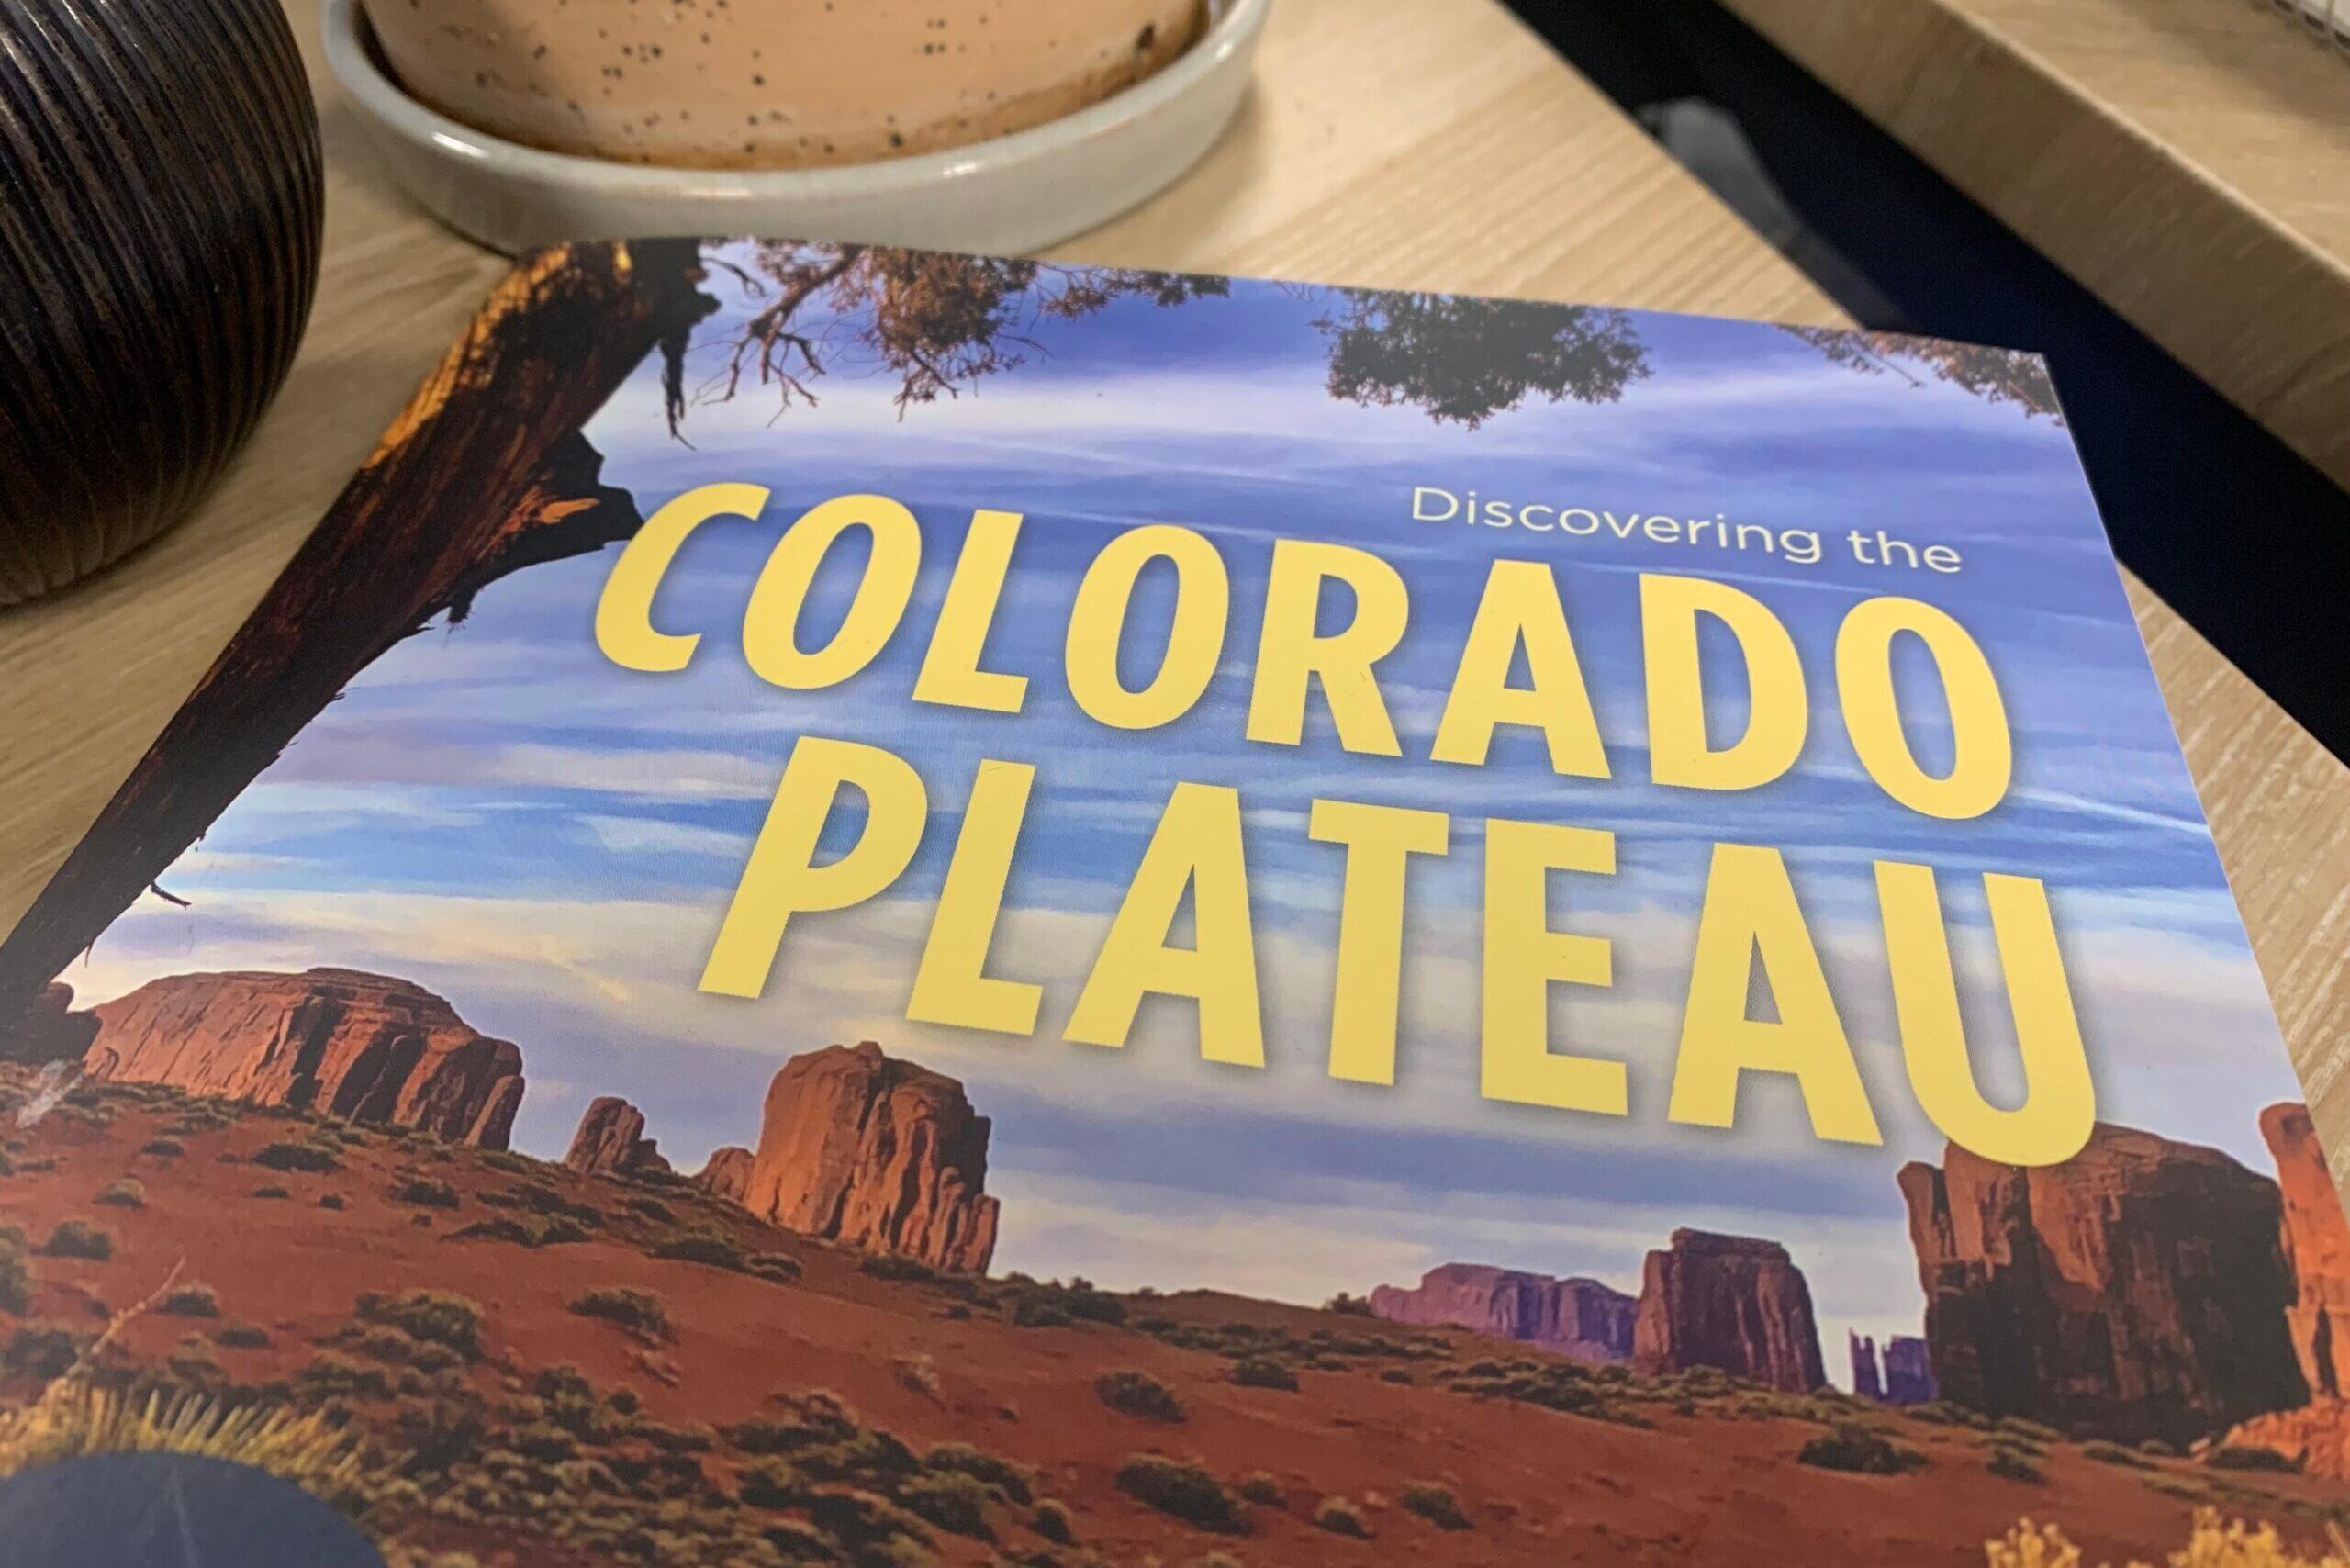 Colorado Plateau Book Bill Haggerty